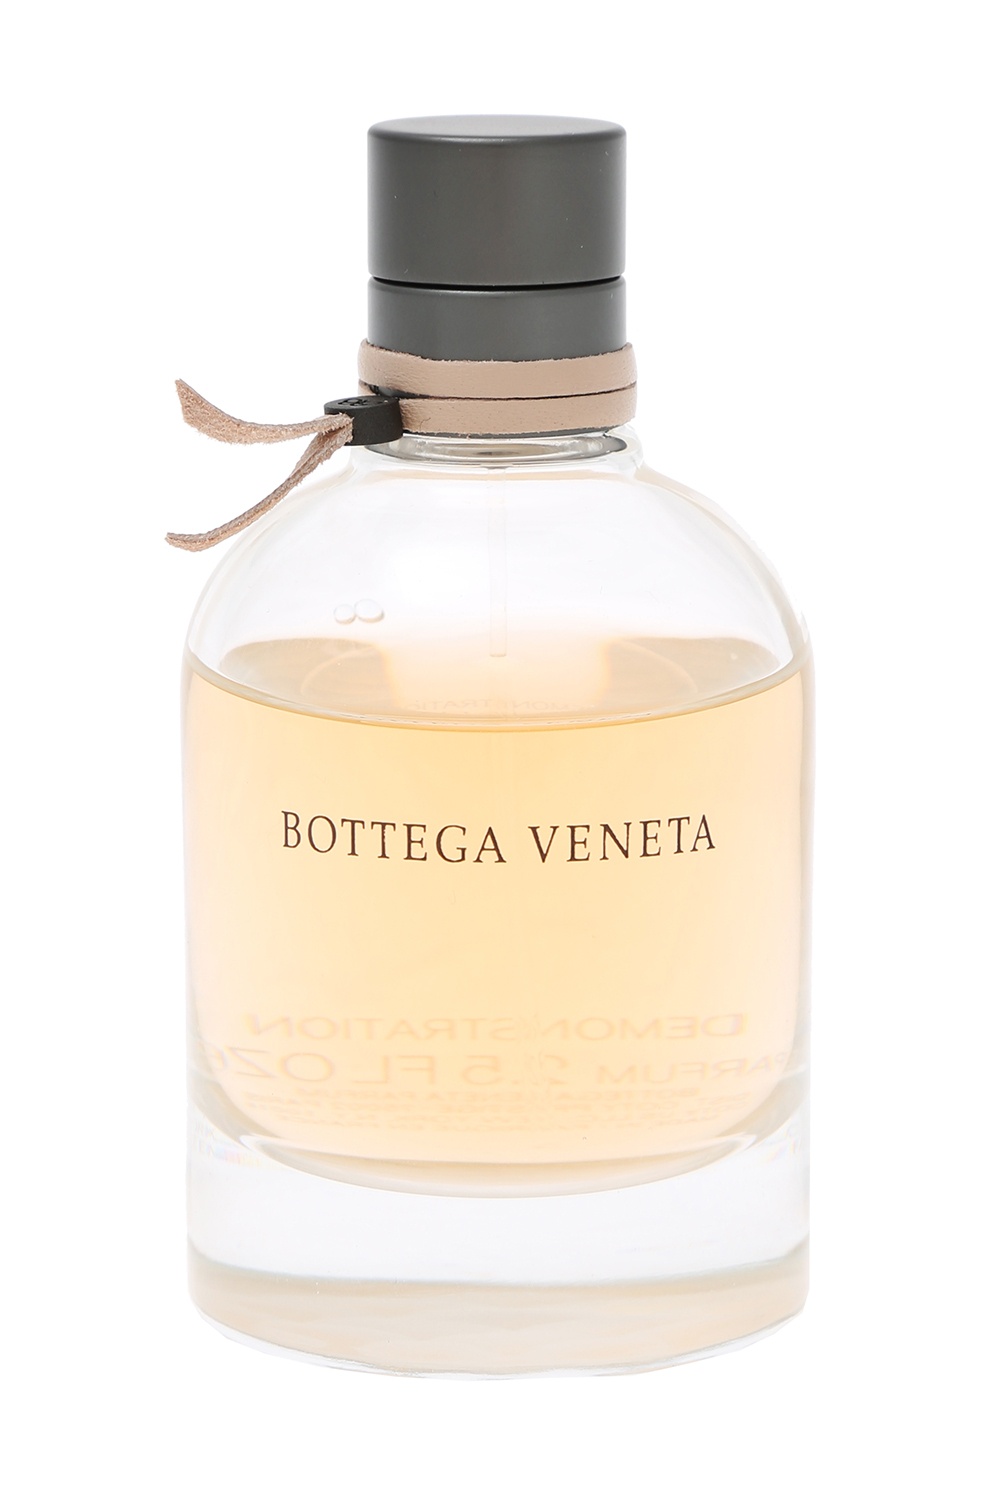 Bottega Veneta Bottega Veneta perfume | Women's Accessories 